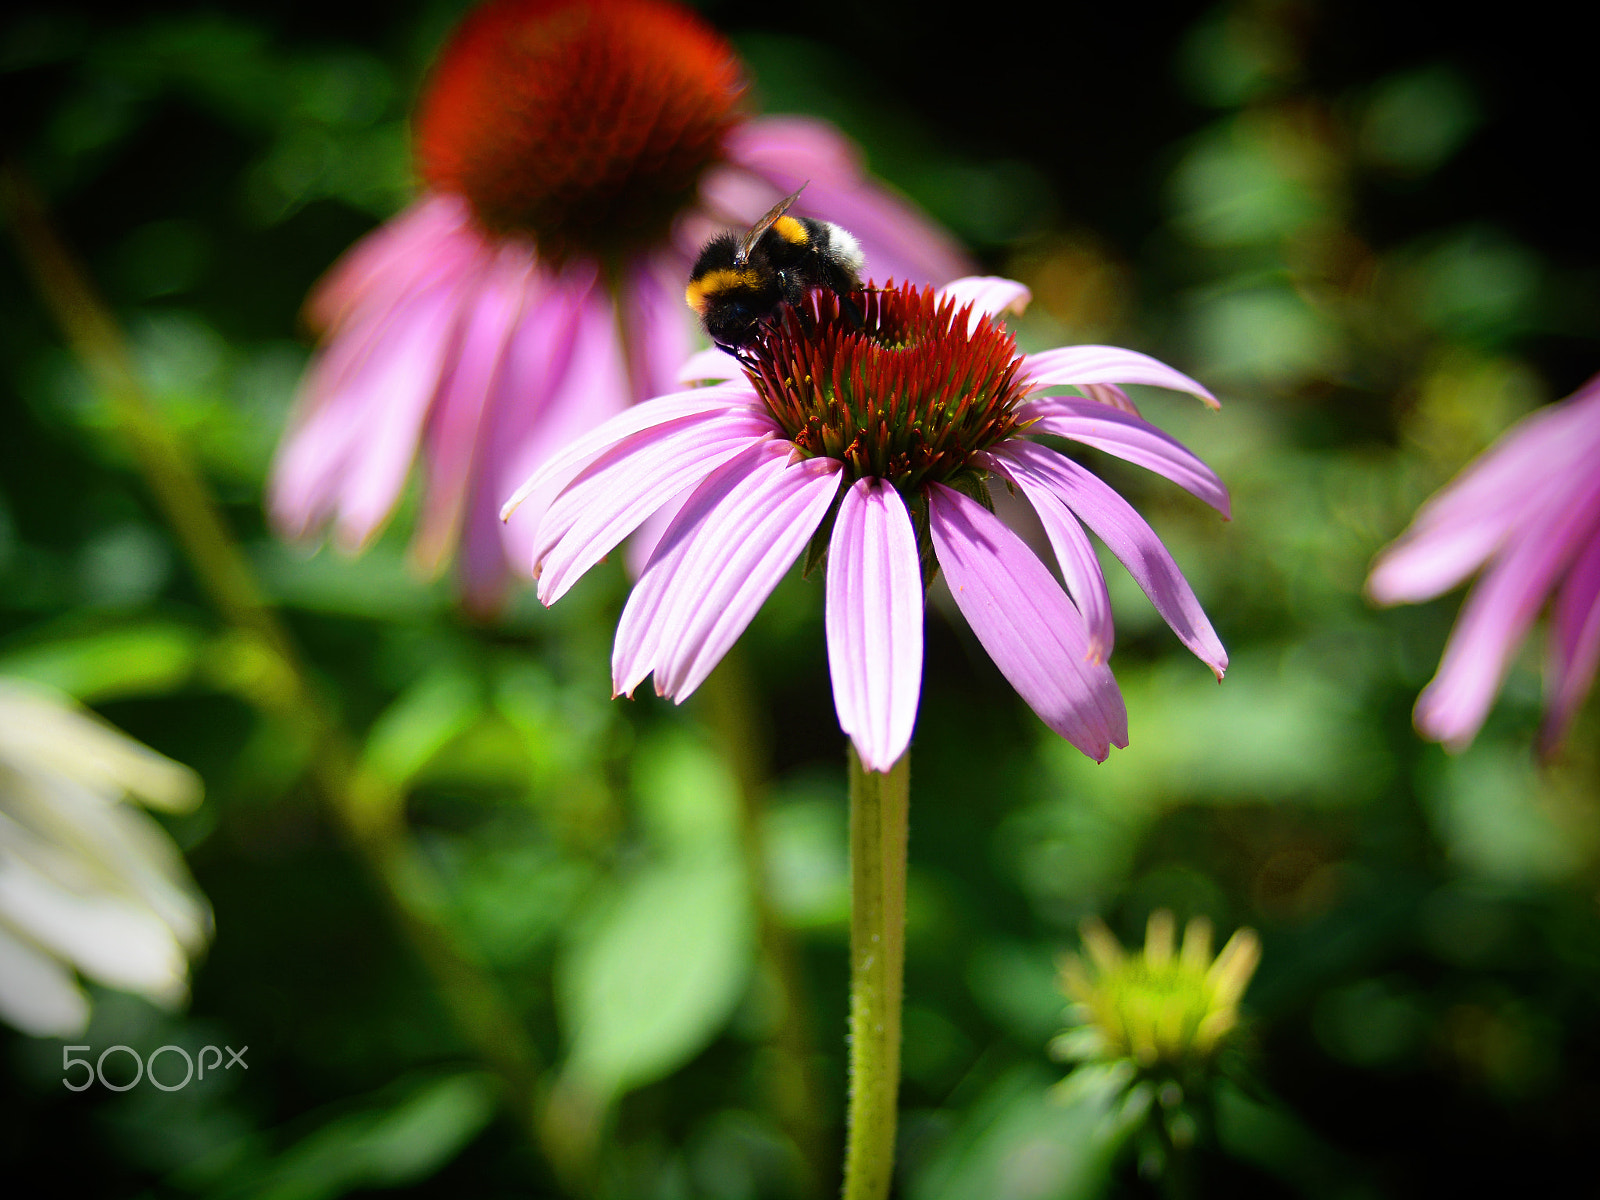 Nikon D7100 + AF Zoom-Nikkor 28-70mm f/3.5-4.5D sample photo. Bumblebee photography